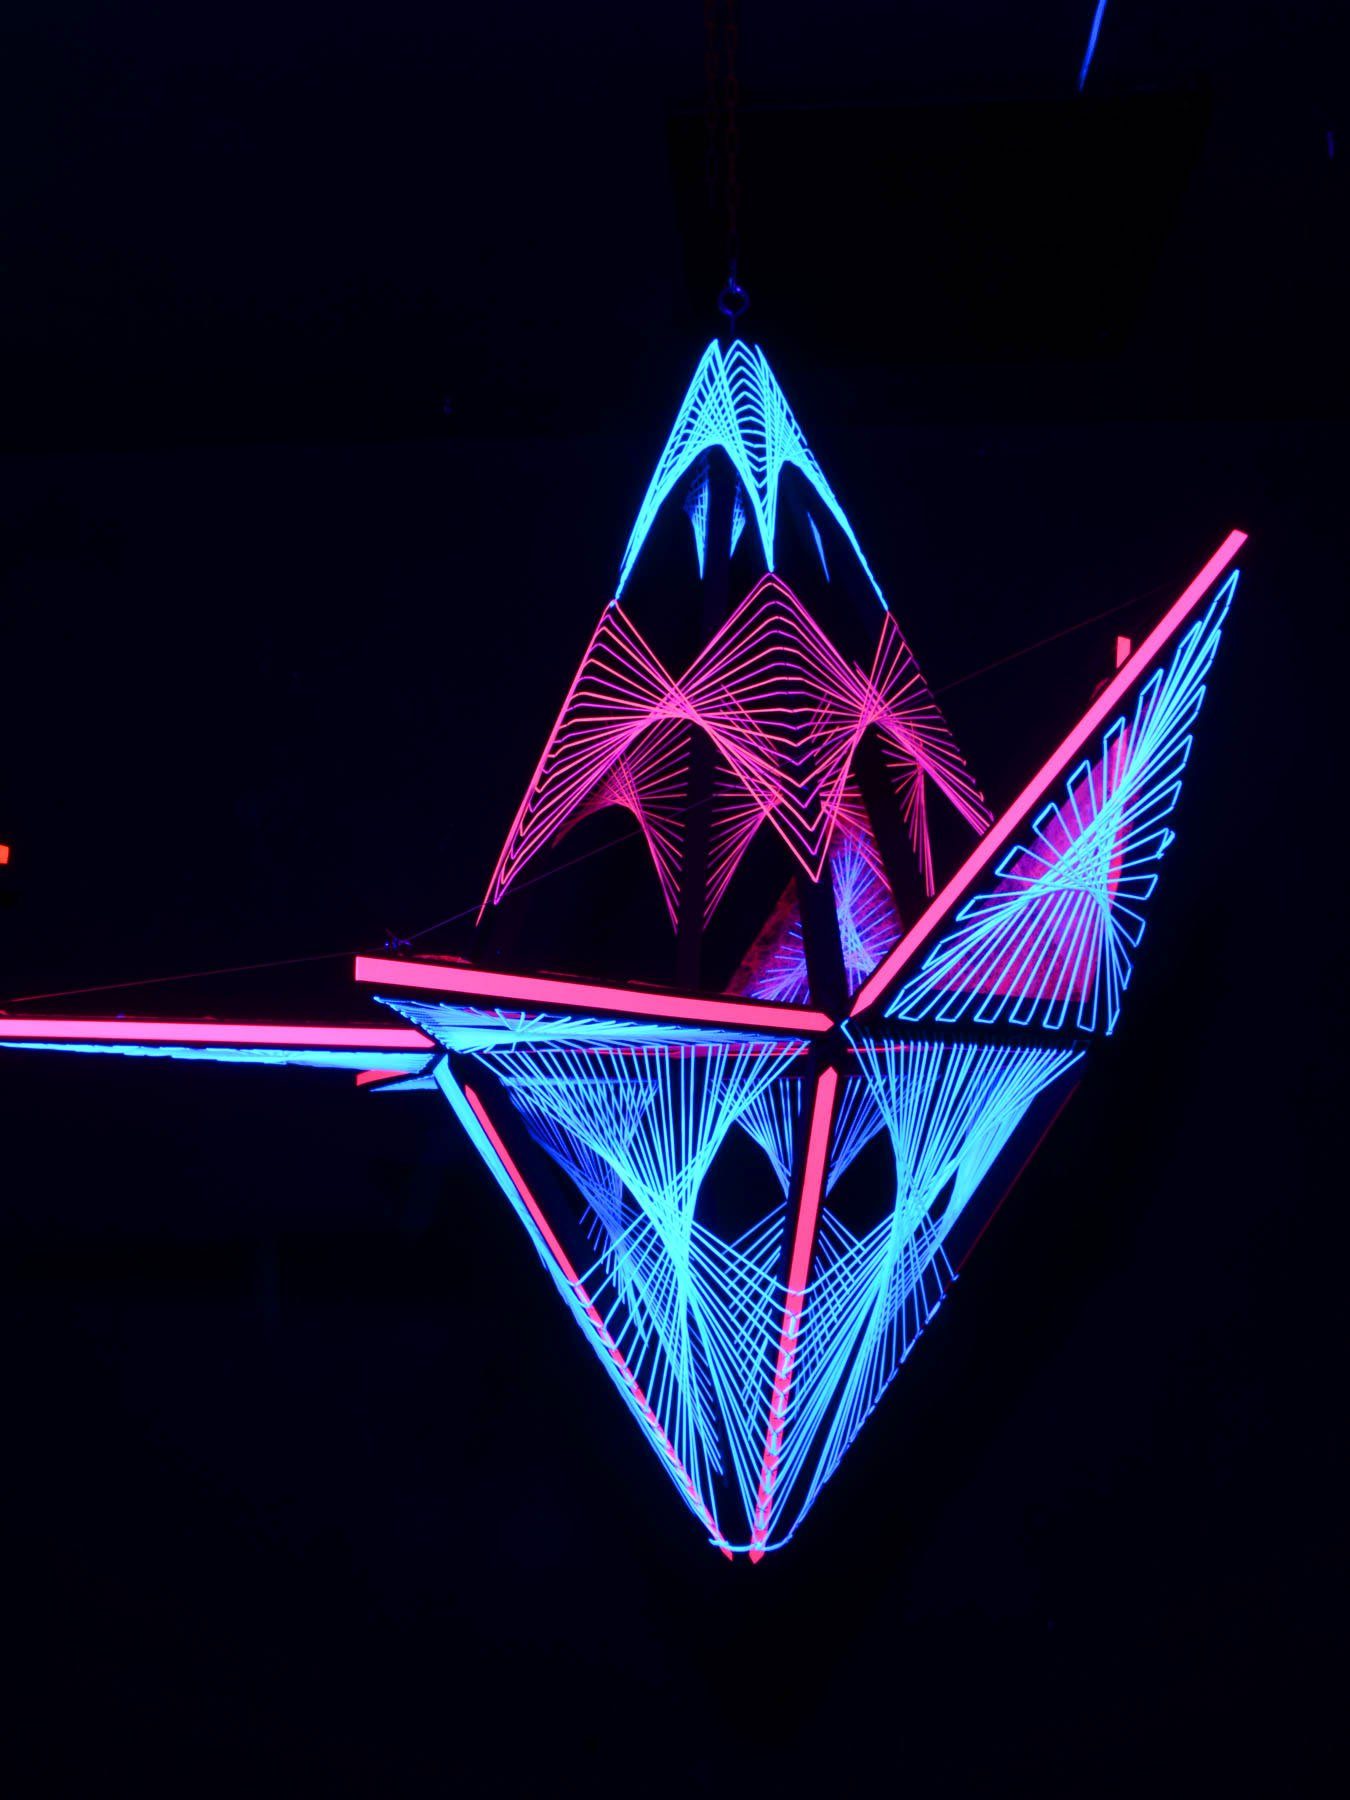 PSYWORK Dekoobjekt Schwarzlicht Shadow", mit Schwarzlicht 3D Dreiecken 1,30m, leuchtet StringArt UV-aktiv, Sechseck unter "Pink